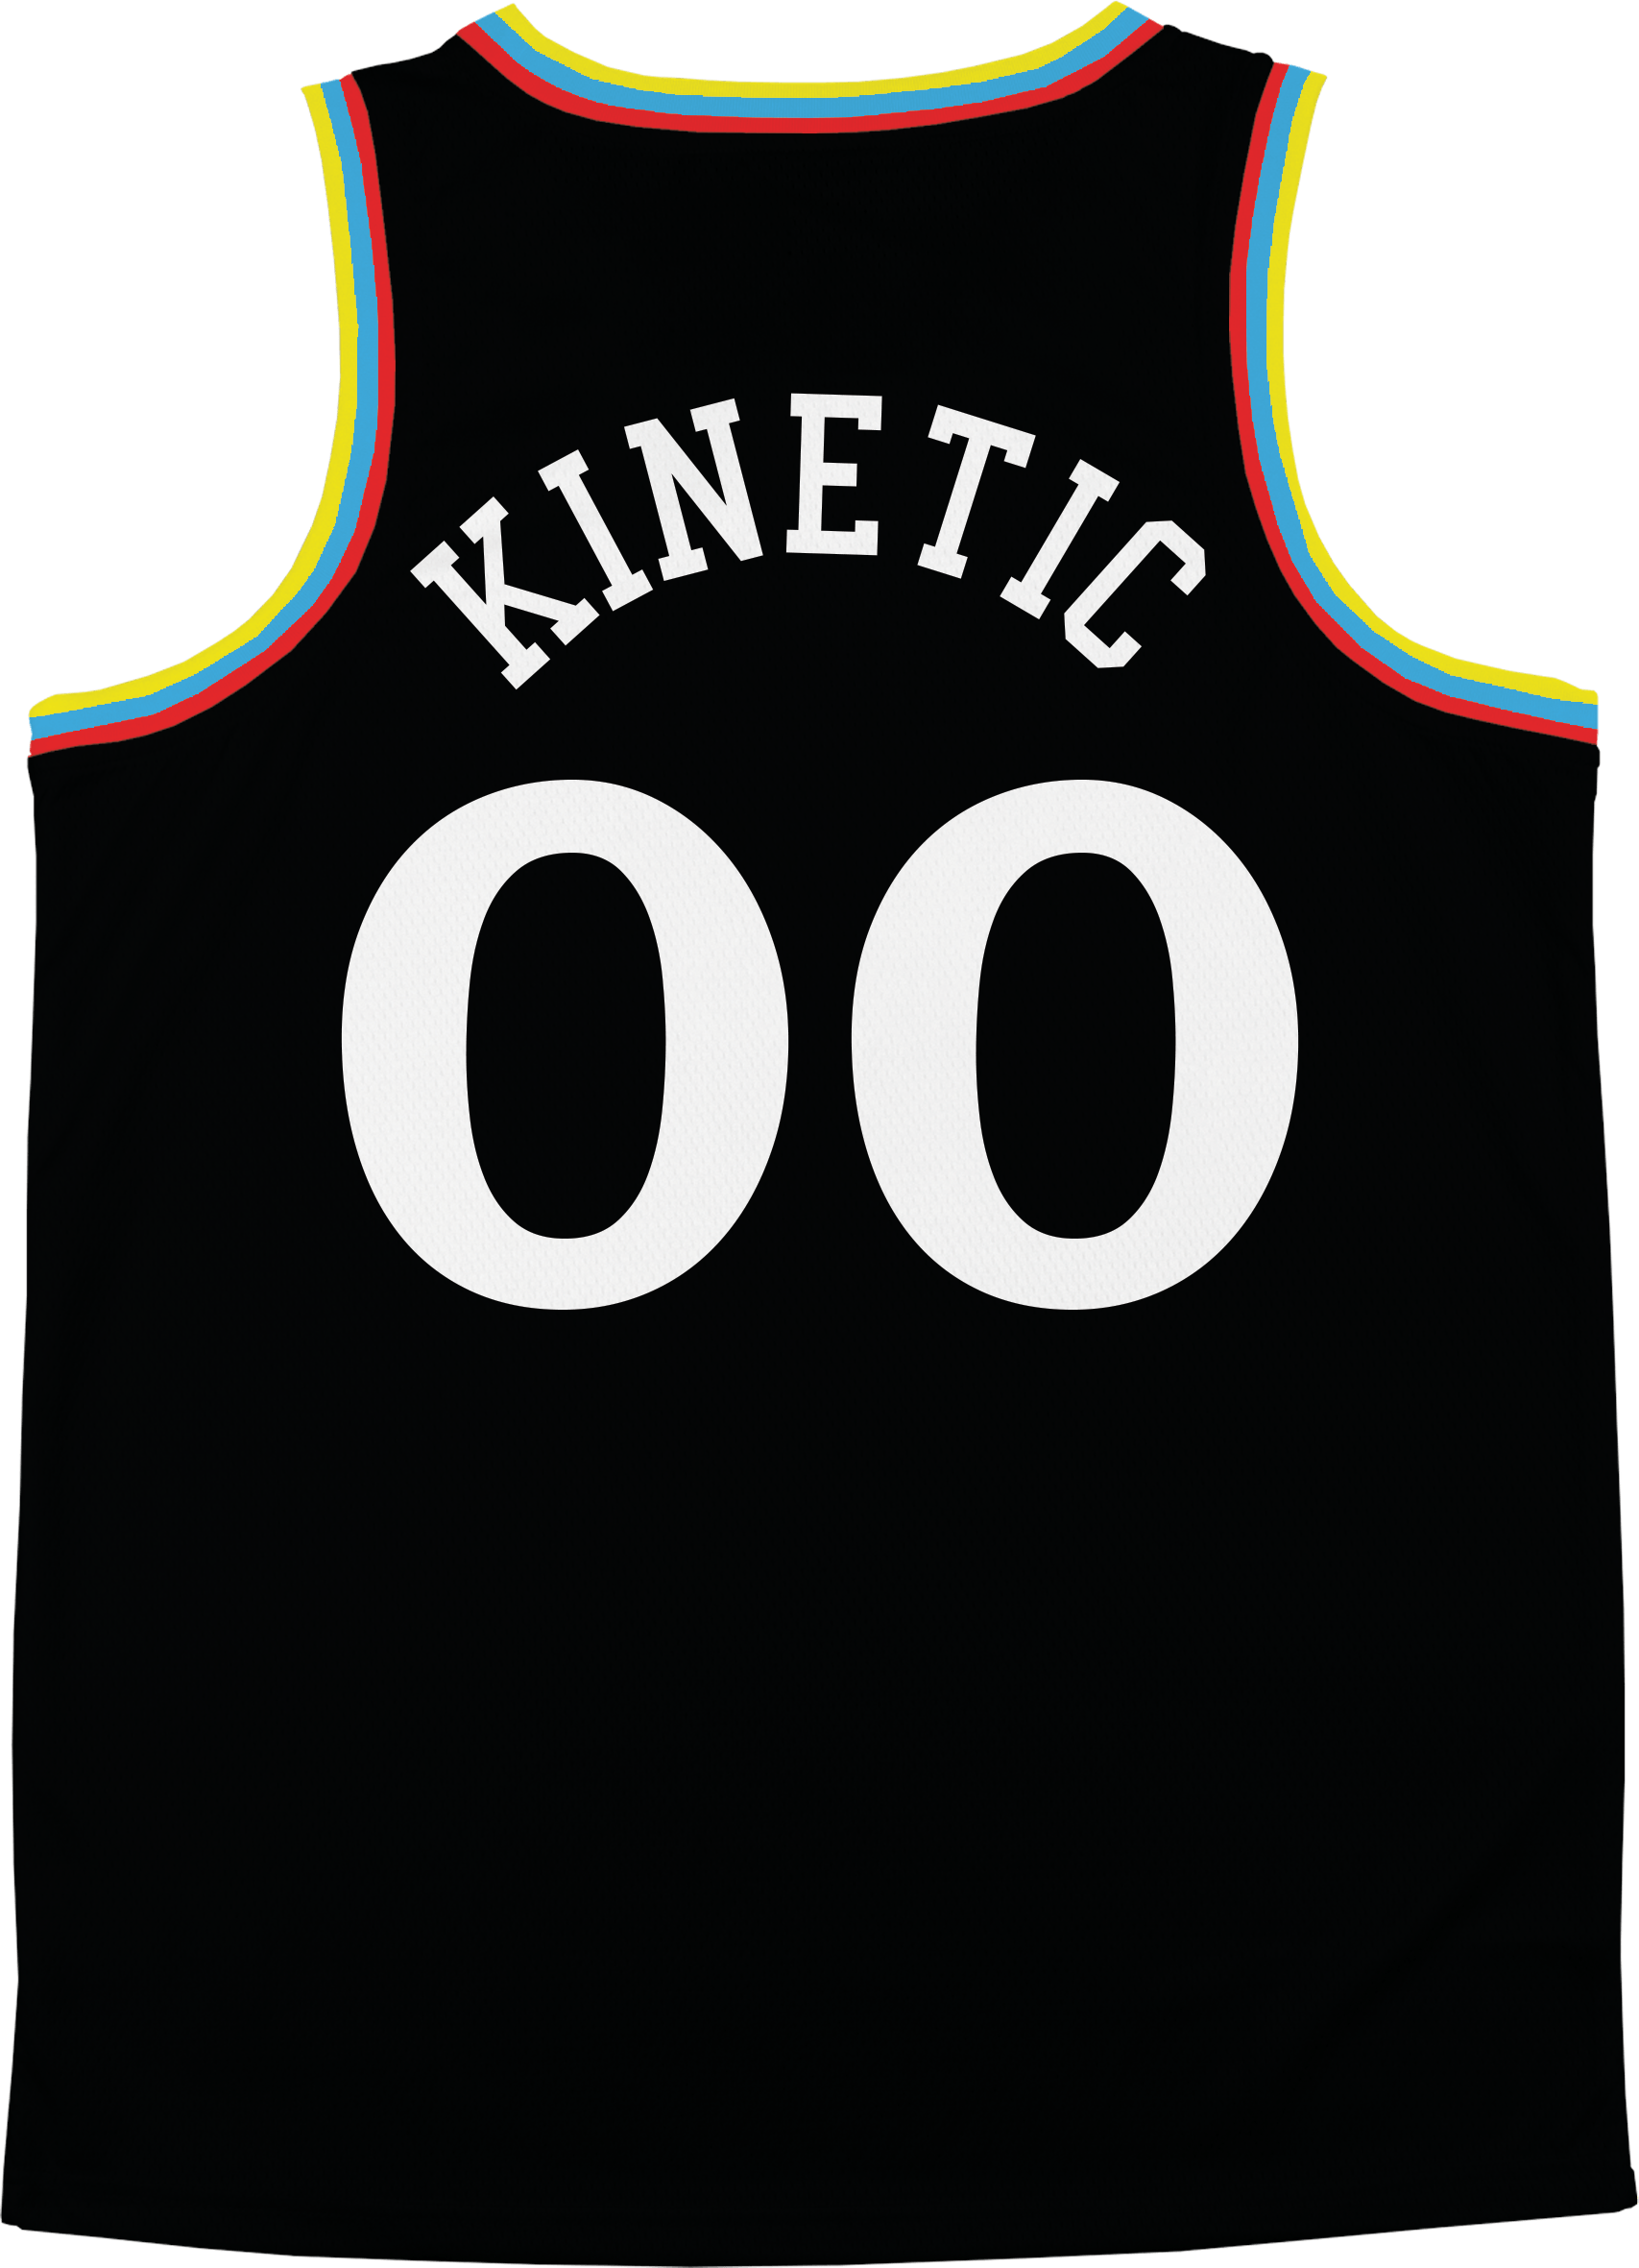 Kappa Sigma - Crayon House Basketball Jersey - Kinetic Society